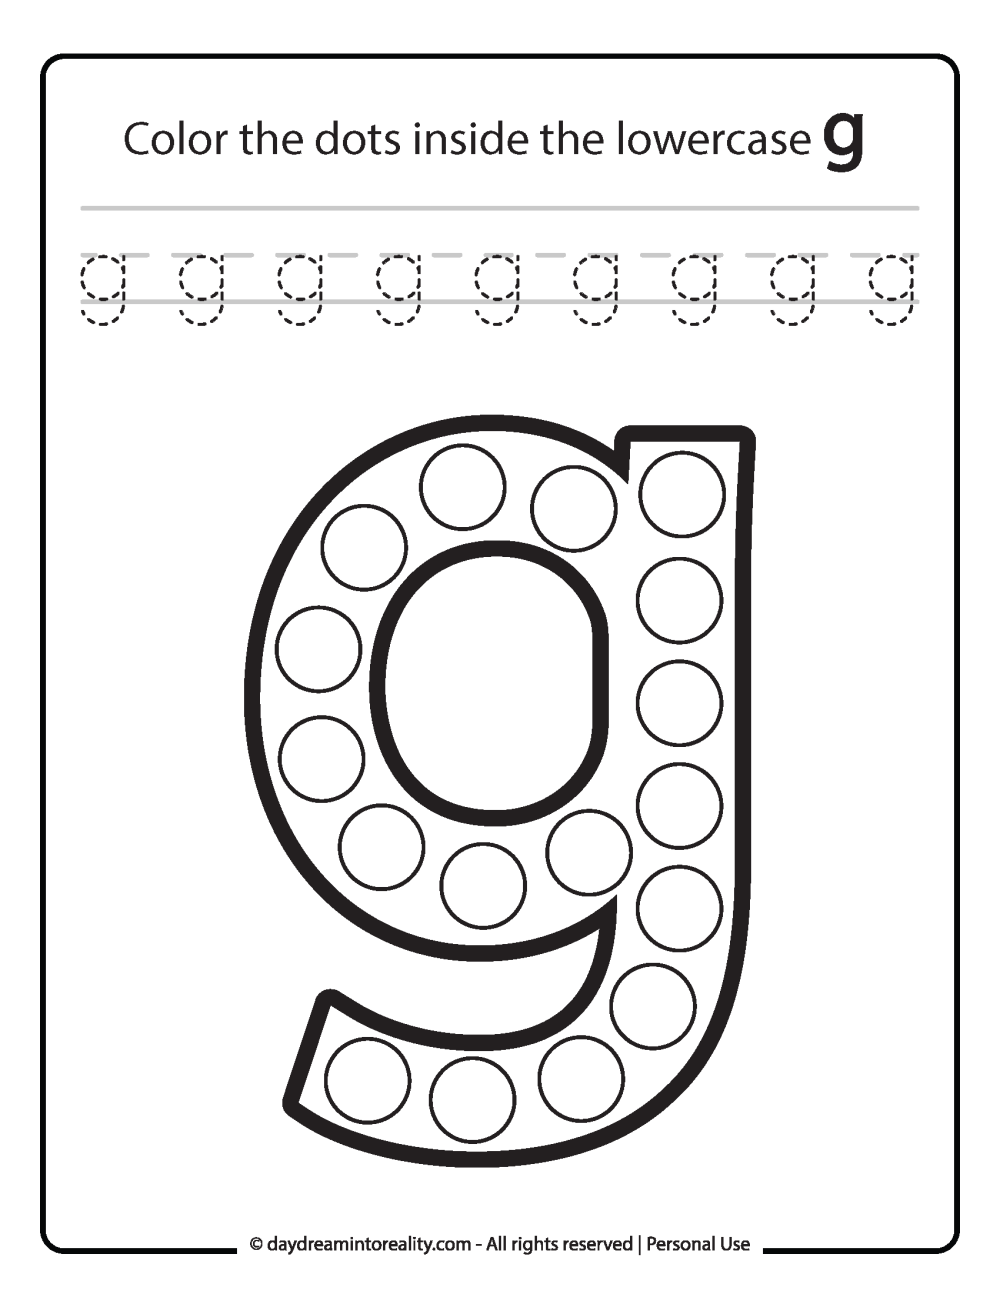 Lowercase "g" Dot Marker Worksheet Free Printable activity for kids (preschool, kindergarten)